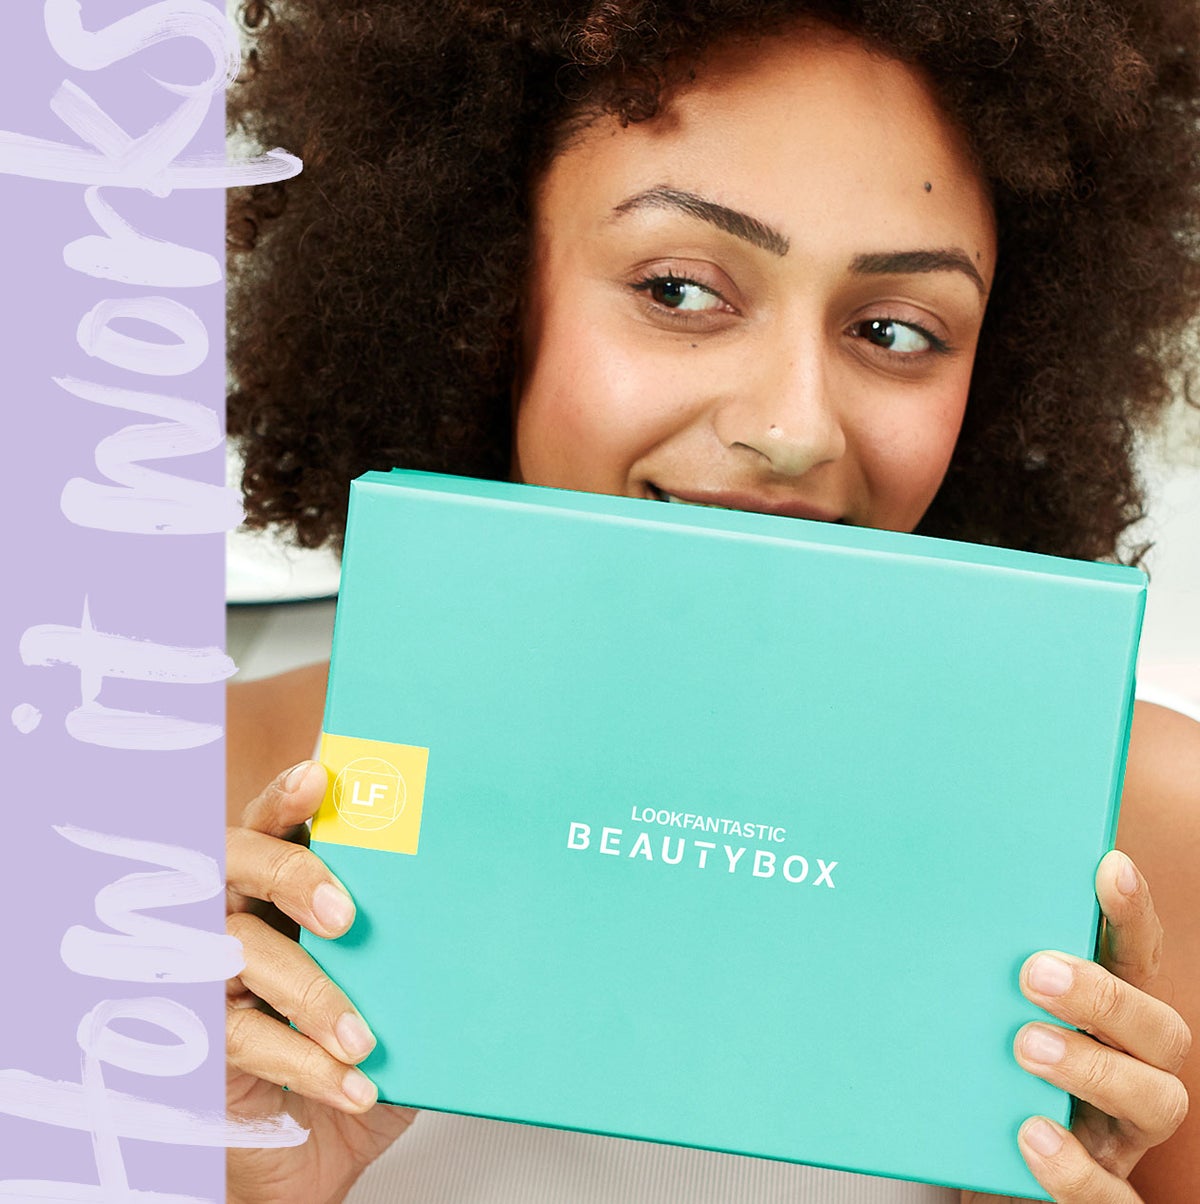 Lue lisää alhaalta miten <b>lookfantastic Beauty Boximme</b> toimii. <br><br> Tutustu boxiin, joka sisältää kuukausittain <b>6 vaihtuvaa kauneustuotetta</b> ja yllättäen sinut joka kerta. Pääset tutustumaan esittelemiimme kosmetiikkabrändeihin.